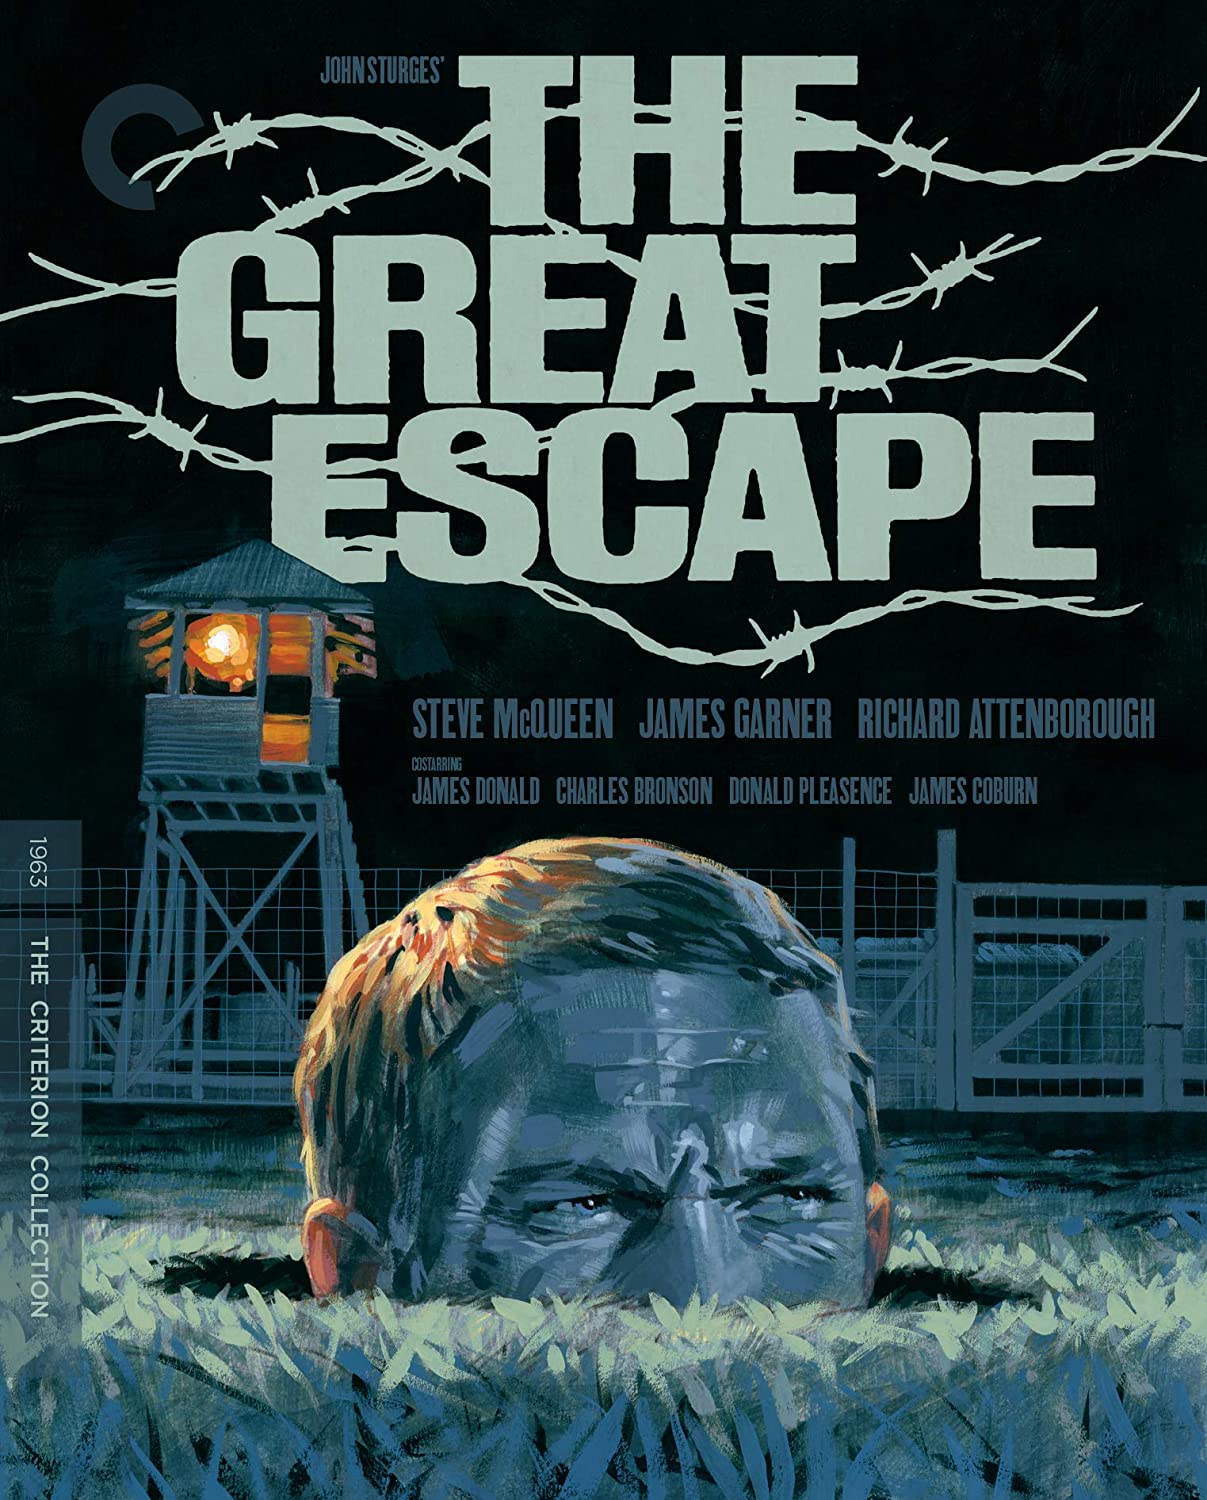 The Great Escape [BluRay]